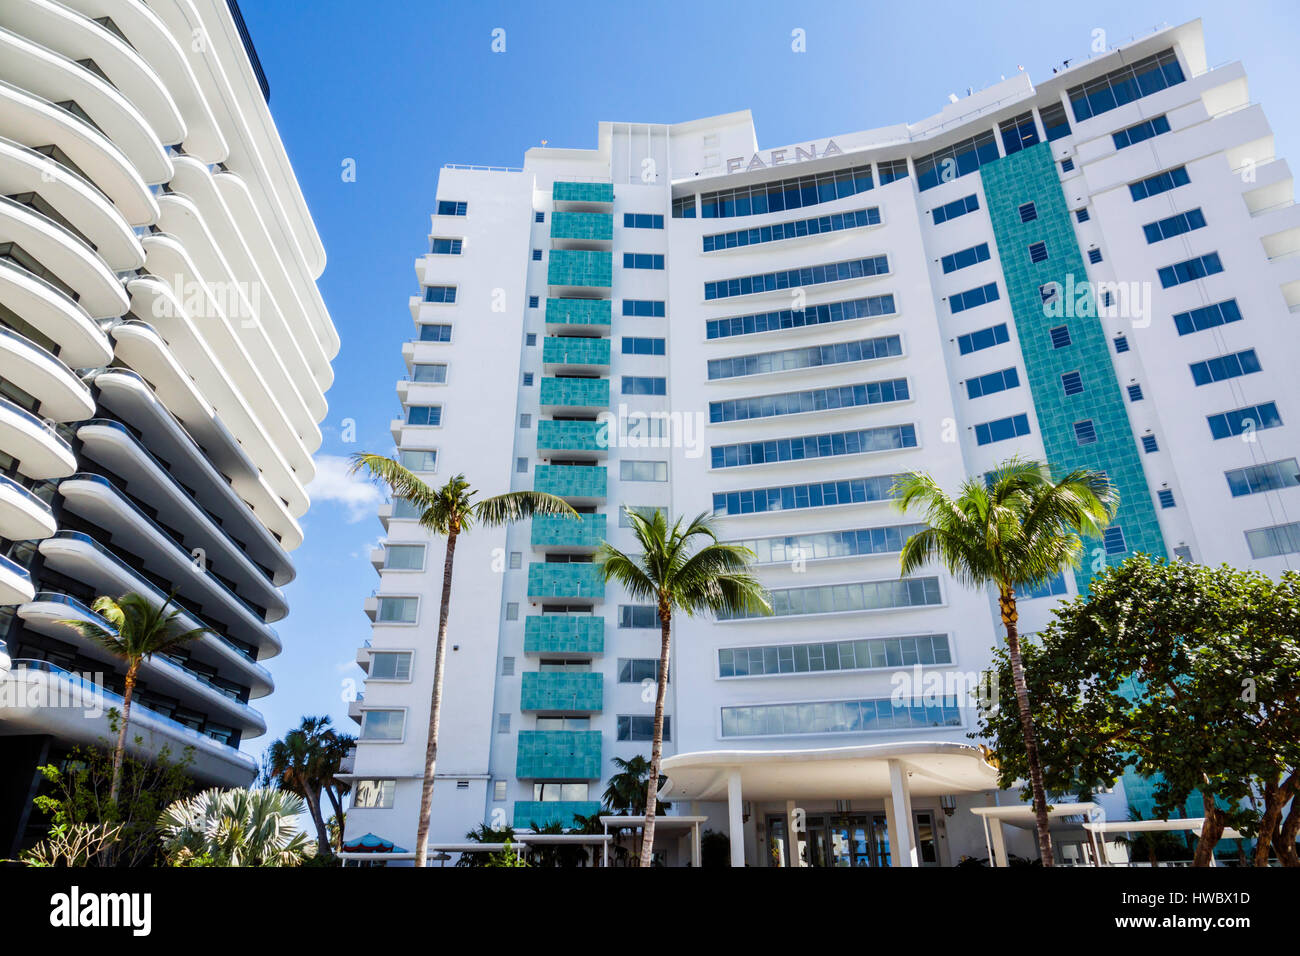 Miami Beach Florida, Faena District, Collins Avenue, Faena Hotel, Faena House, hotel, residenze condominali, edificio, esterno, modernista, architettura, FL1702 Foto Stock